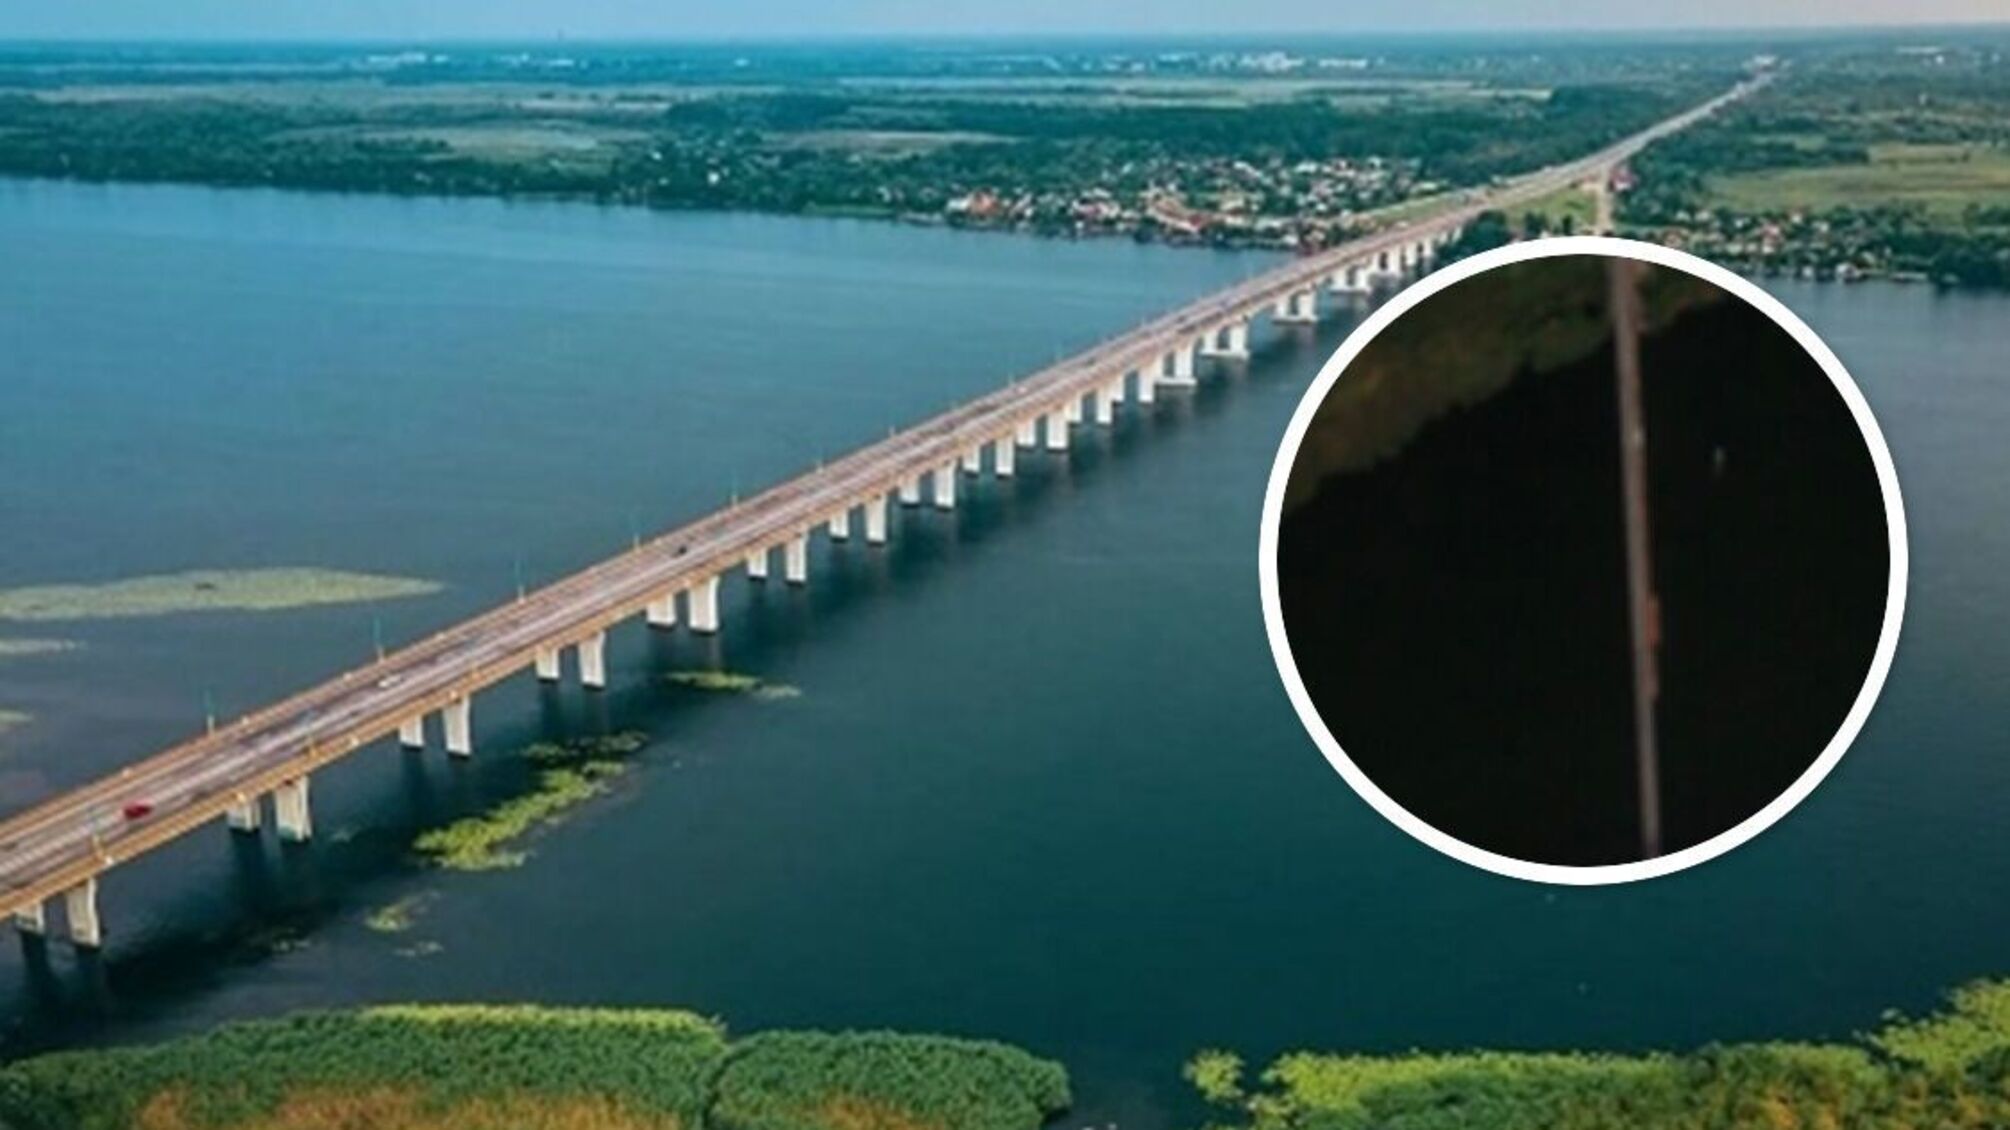 Спутниковые снимки подтвердили информацию о перестройке россиянами баржевого моста в Антоновке